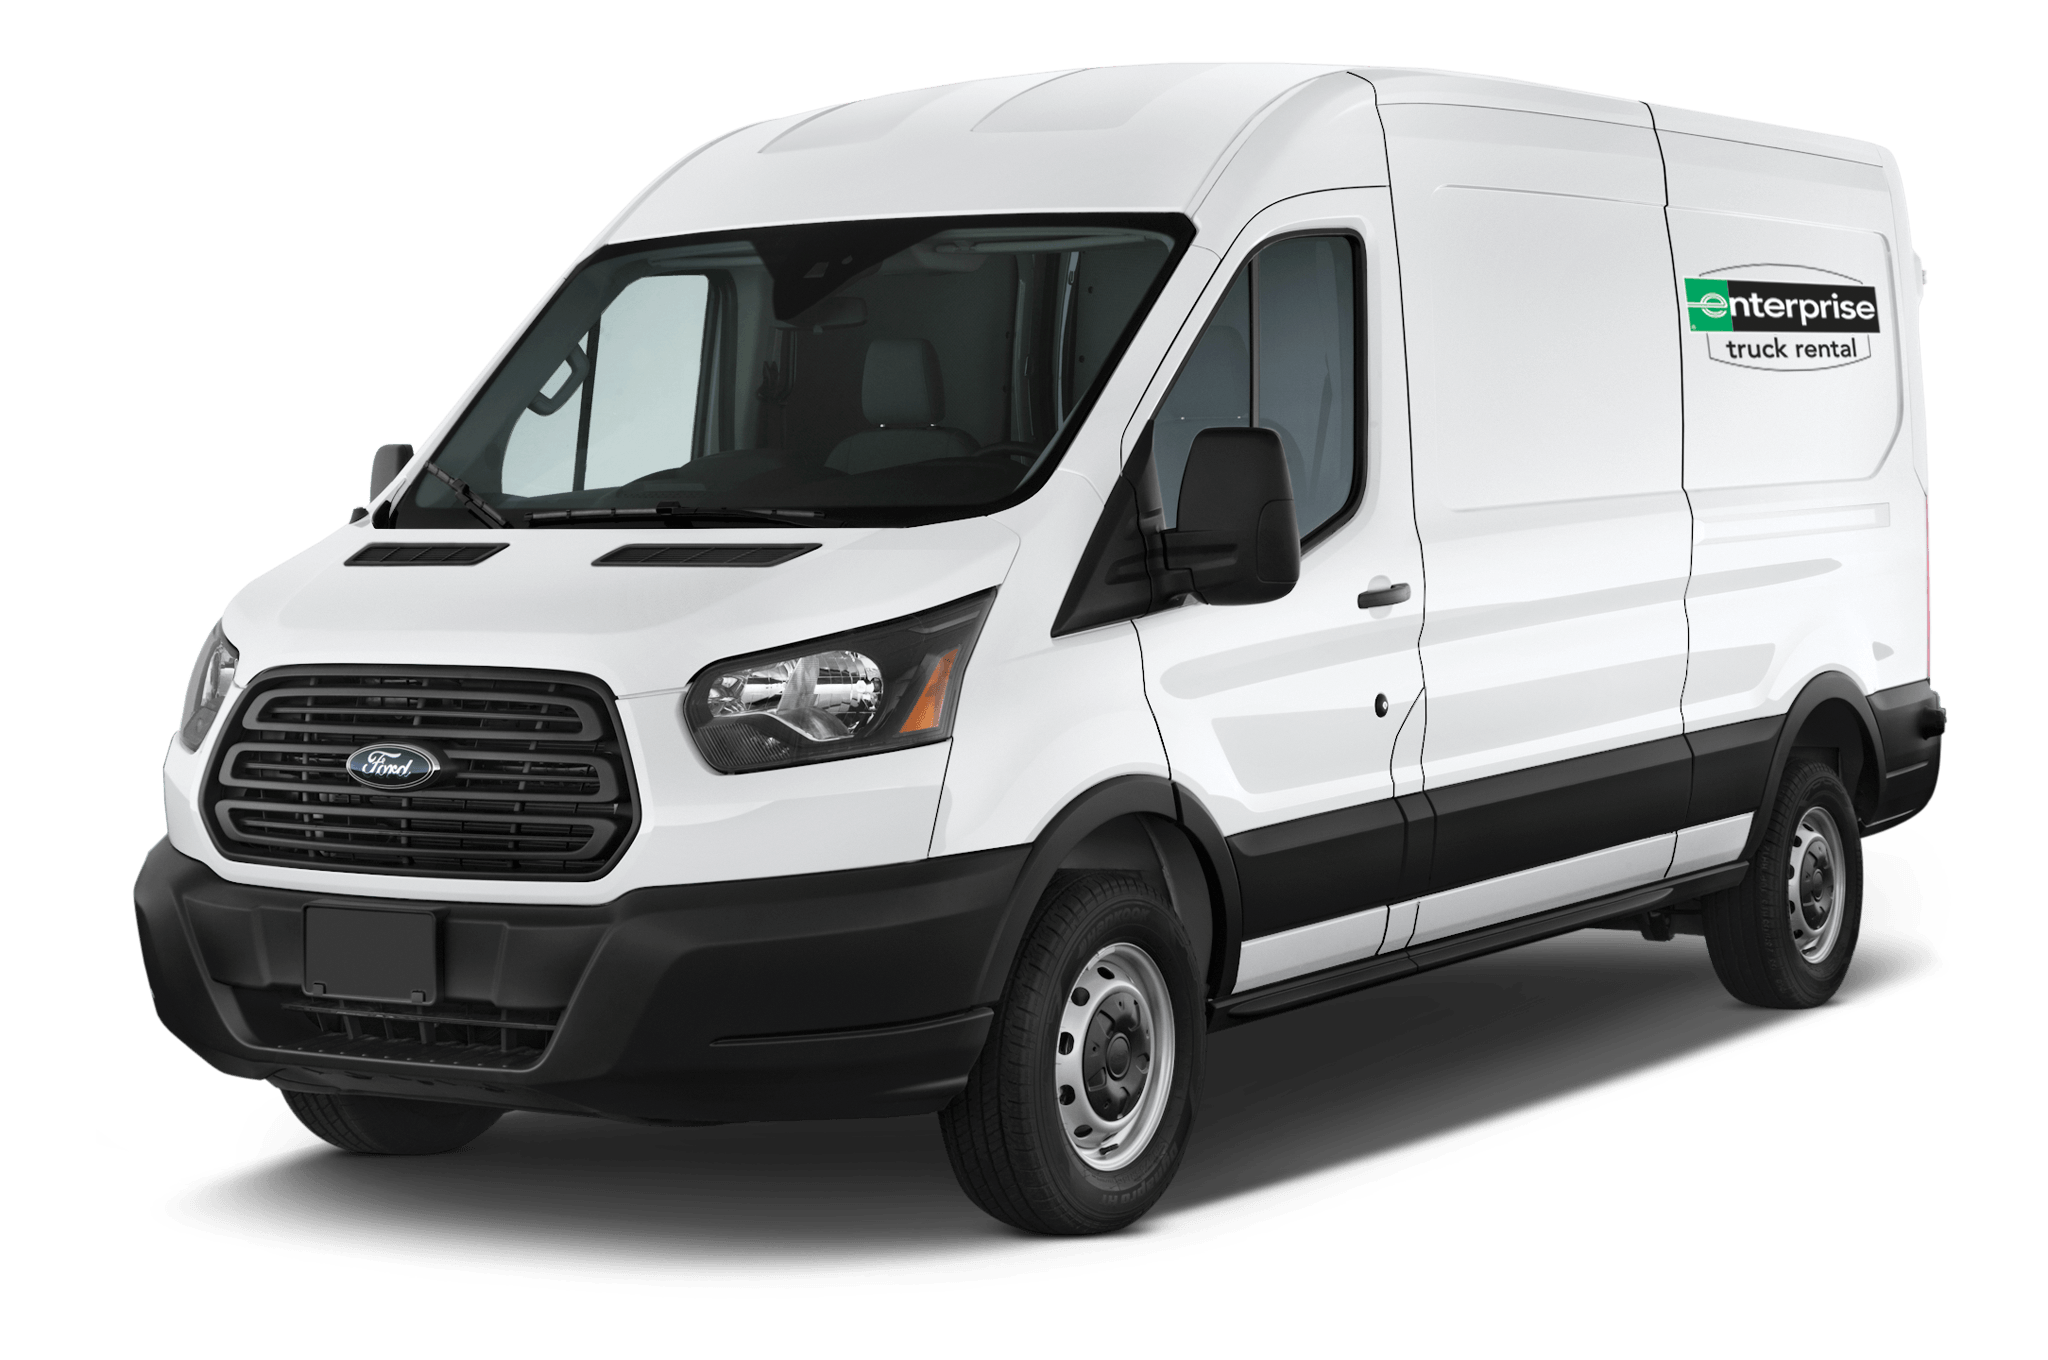 Enterprise Truck Rental à Saint-Hubert